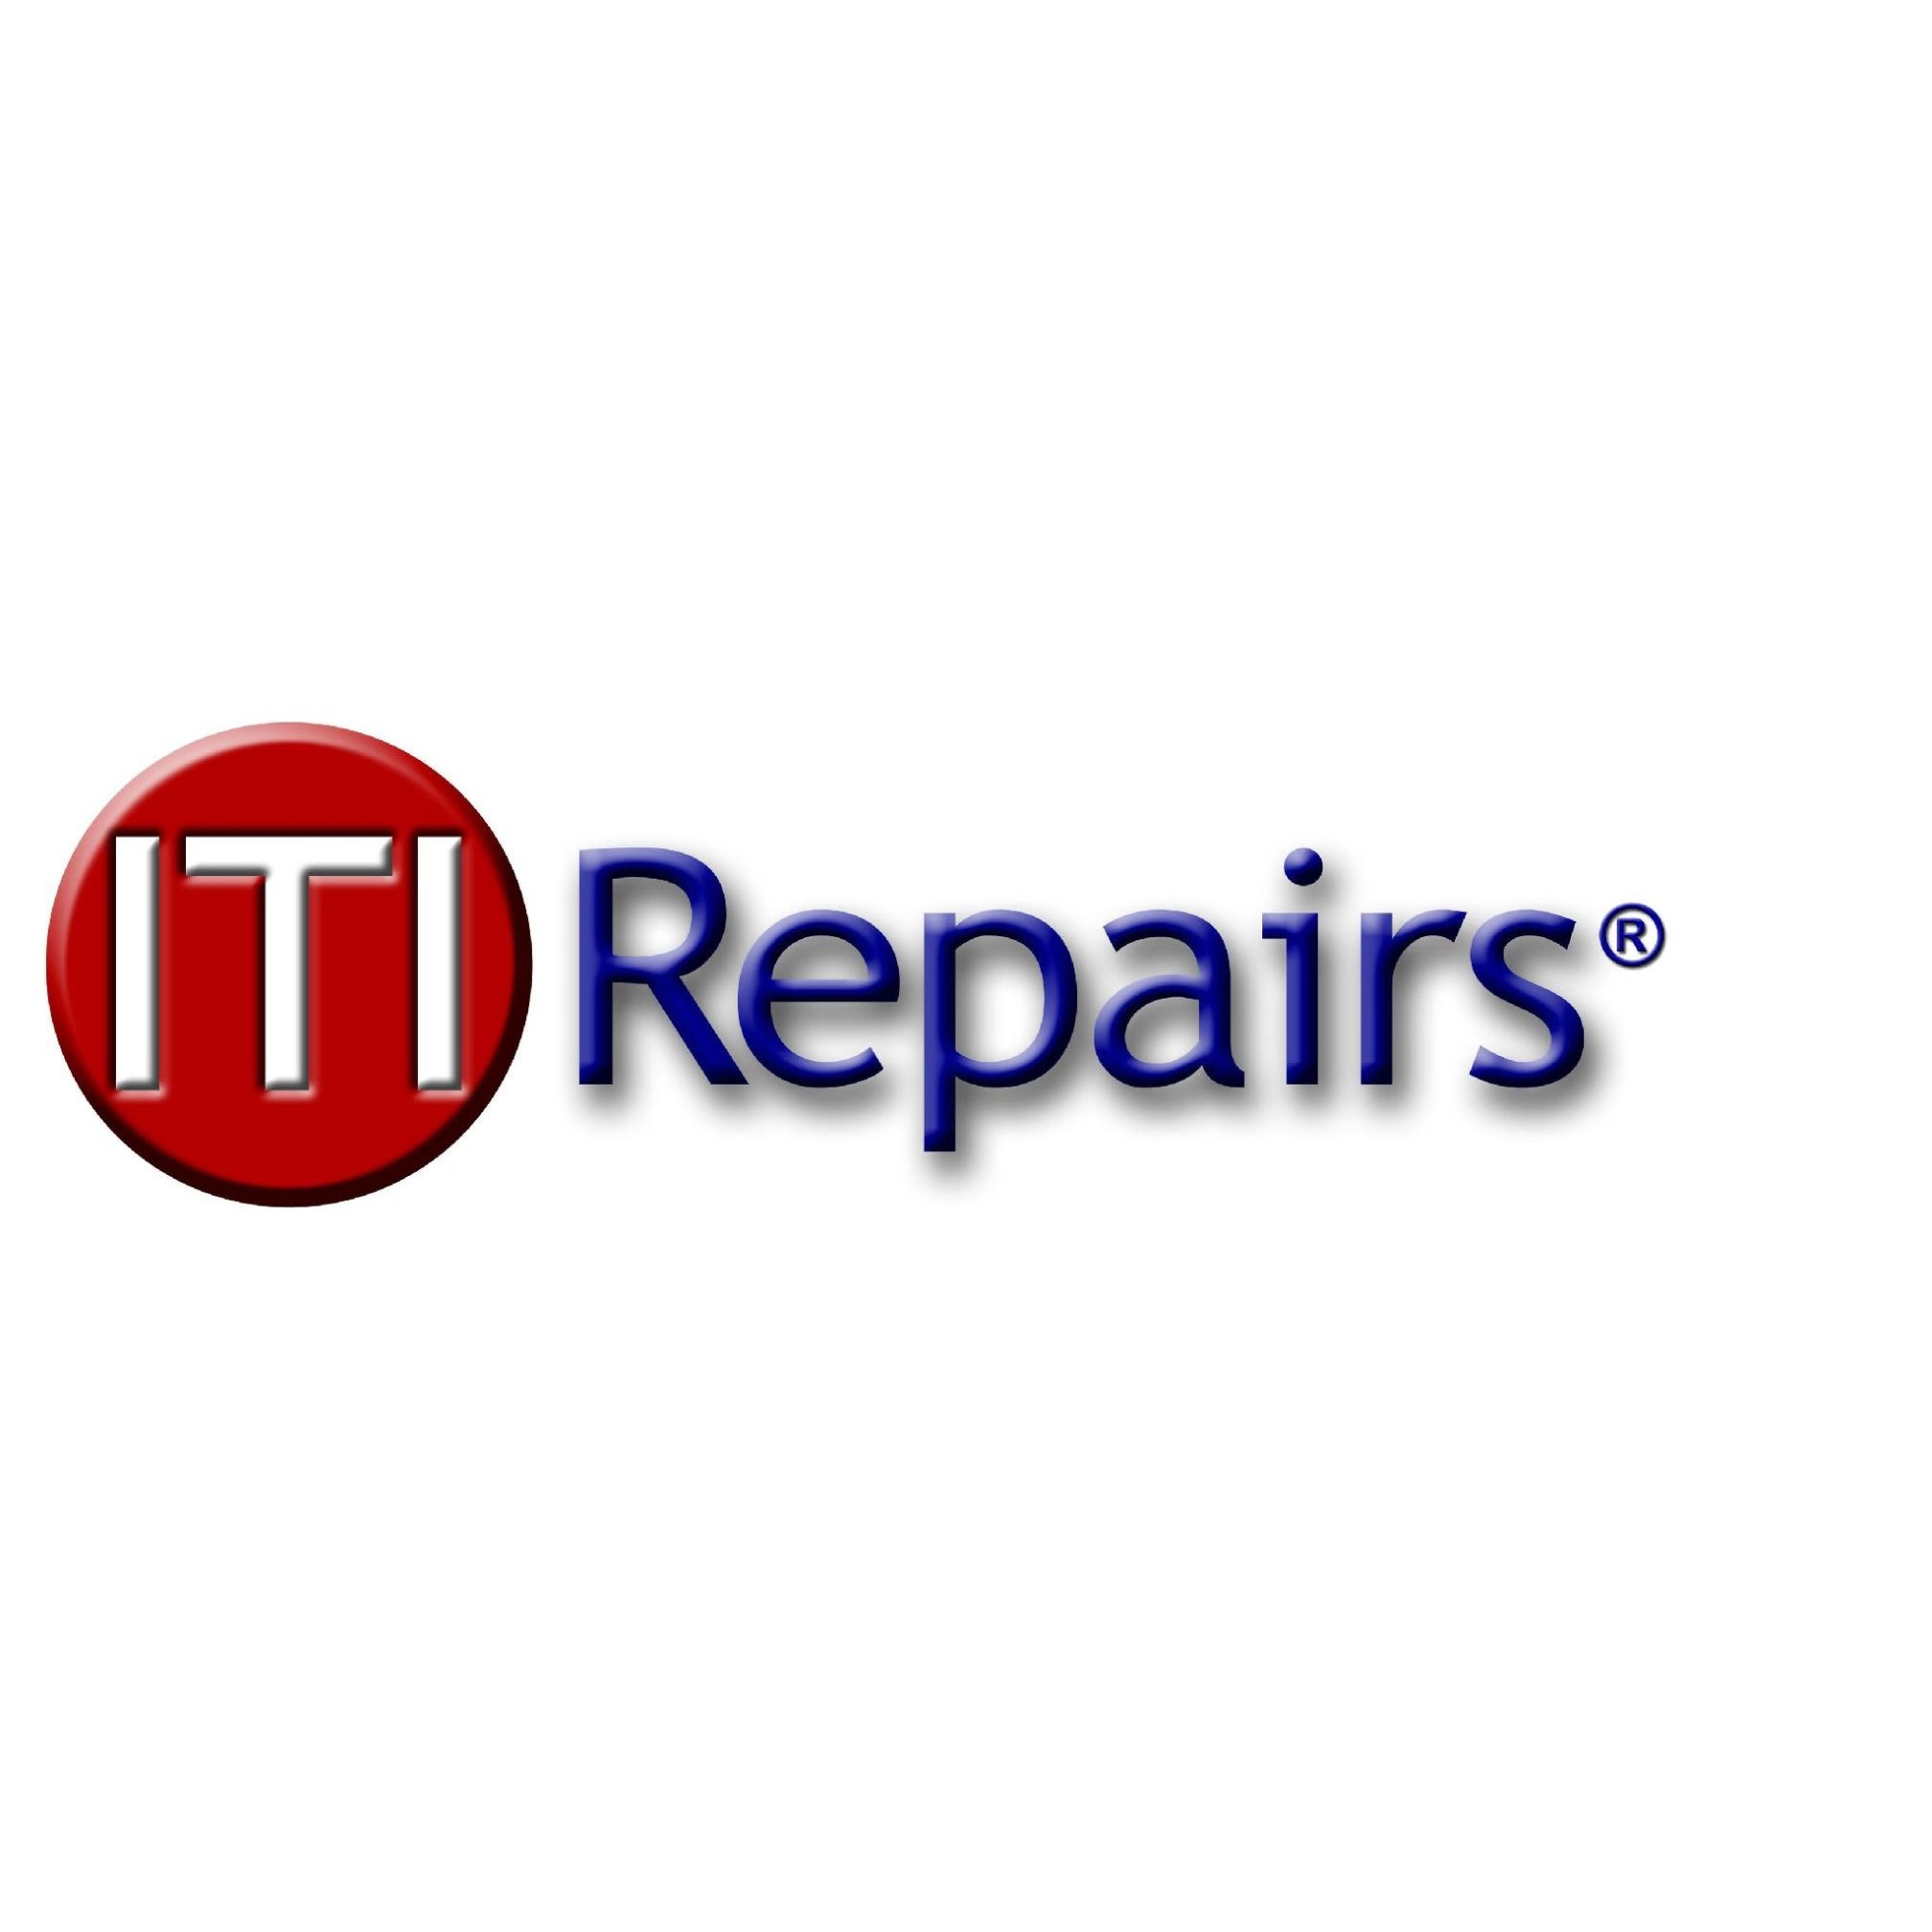 ITI Repairs Ltd Logo